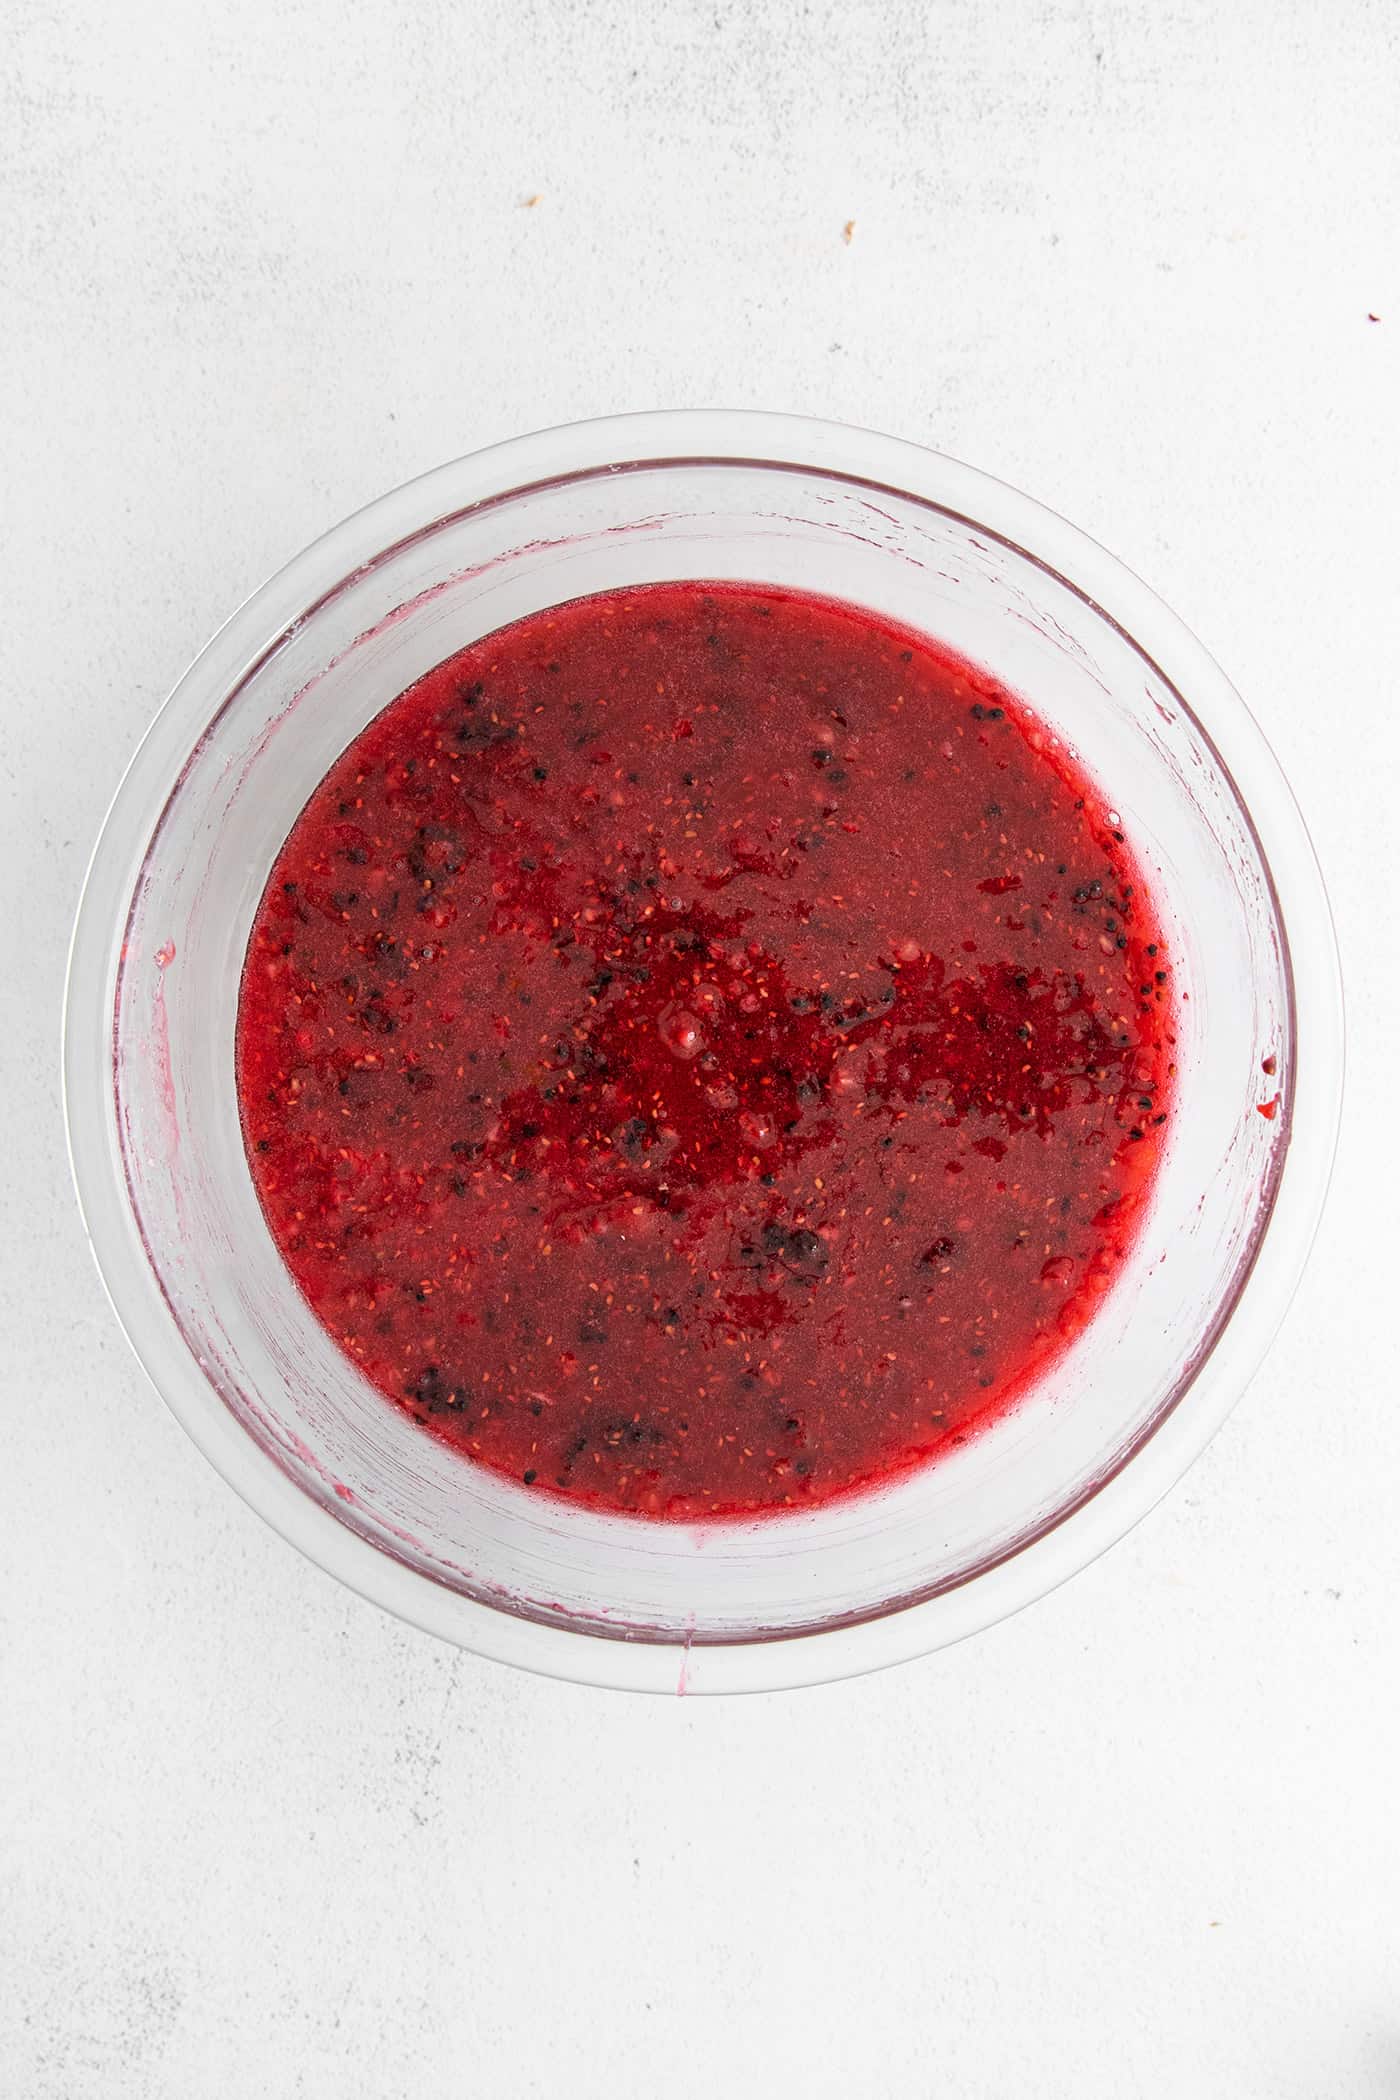 Raspberry freezer jam in a bowl